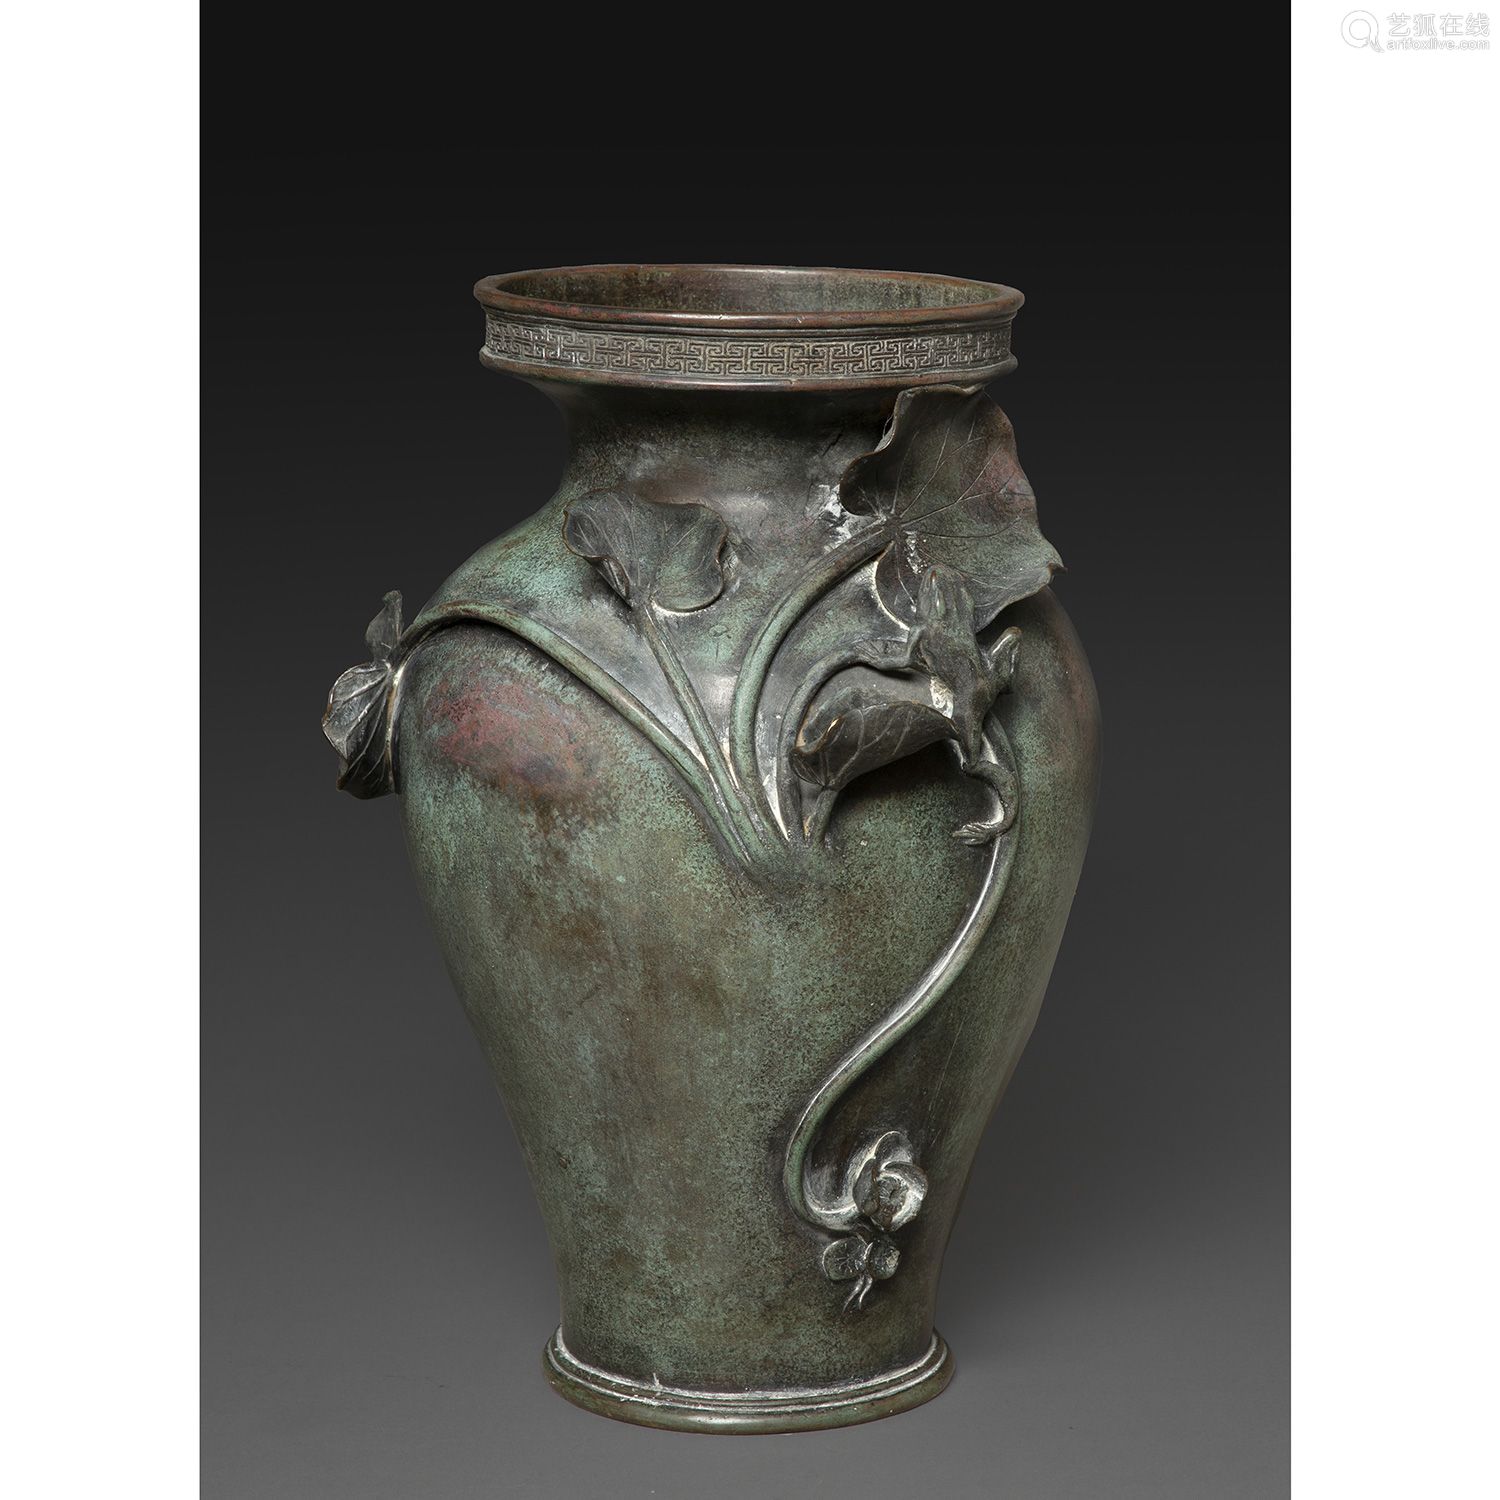 铜瓶,日本,明治-大正时期,20世纪初青铜 花瓶 图案